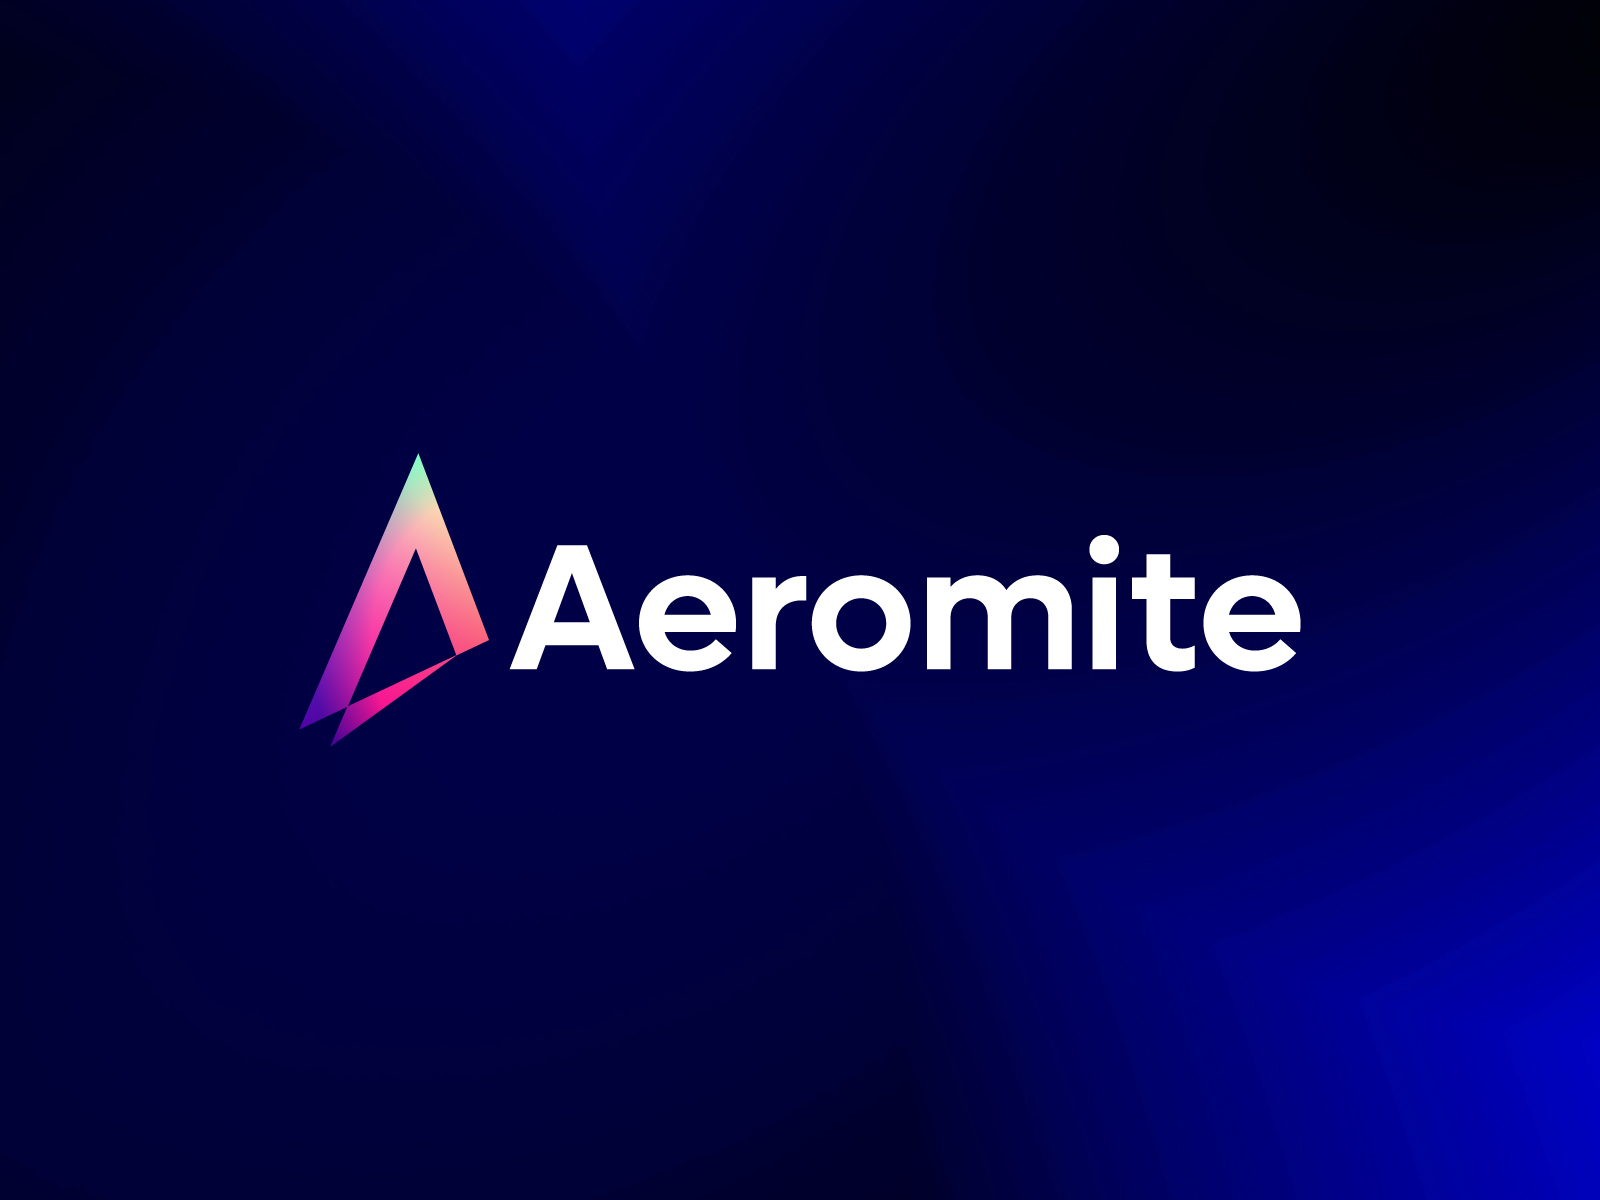 Aeromite-Finance App Logo by Kakon Ghosh on Dribbble